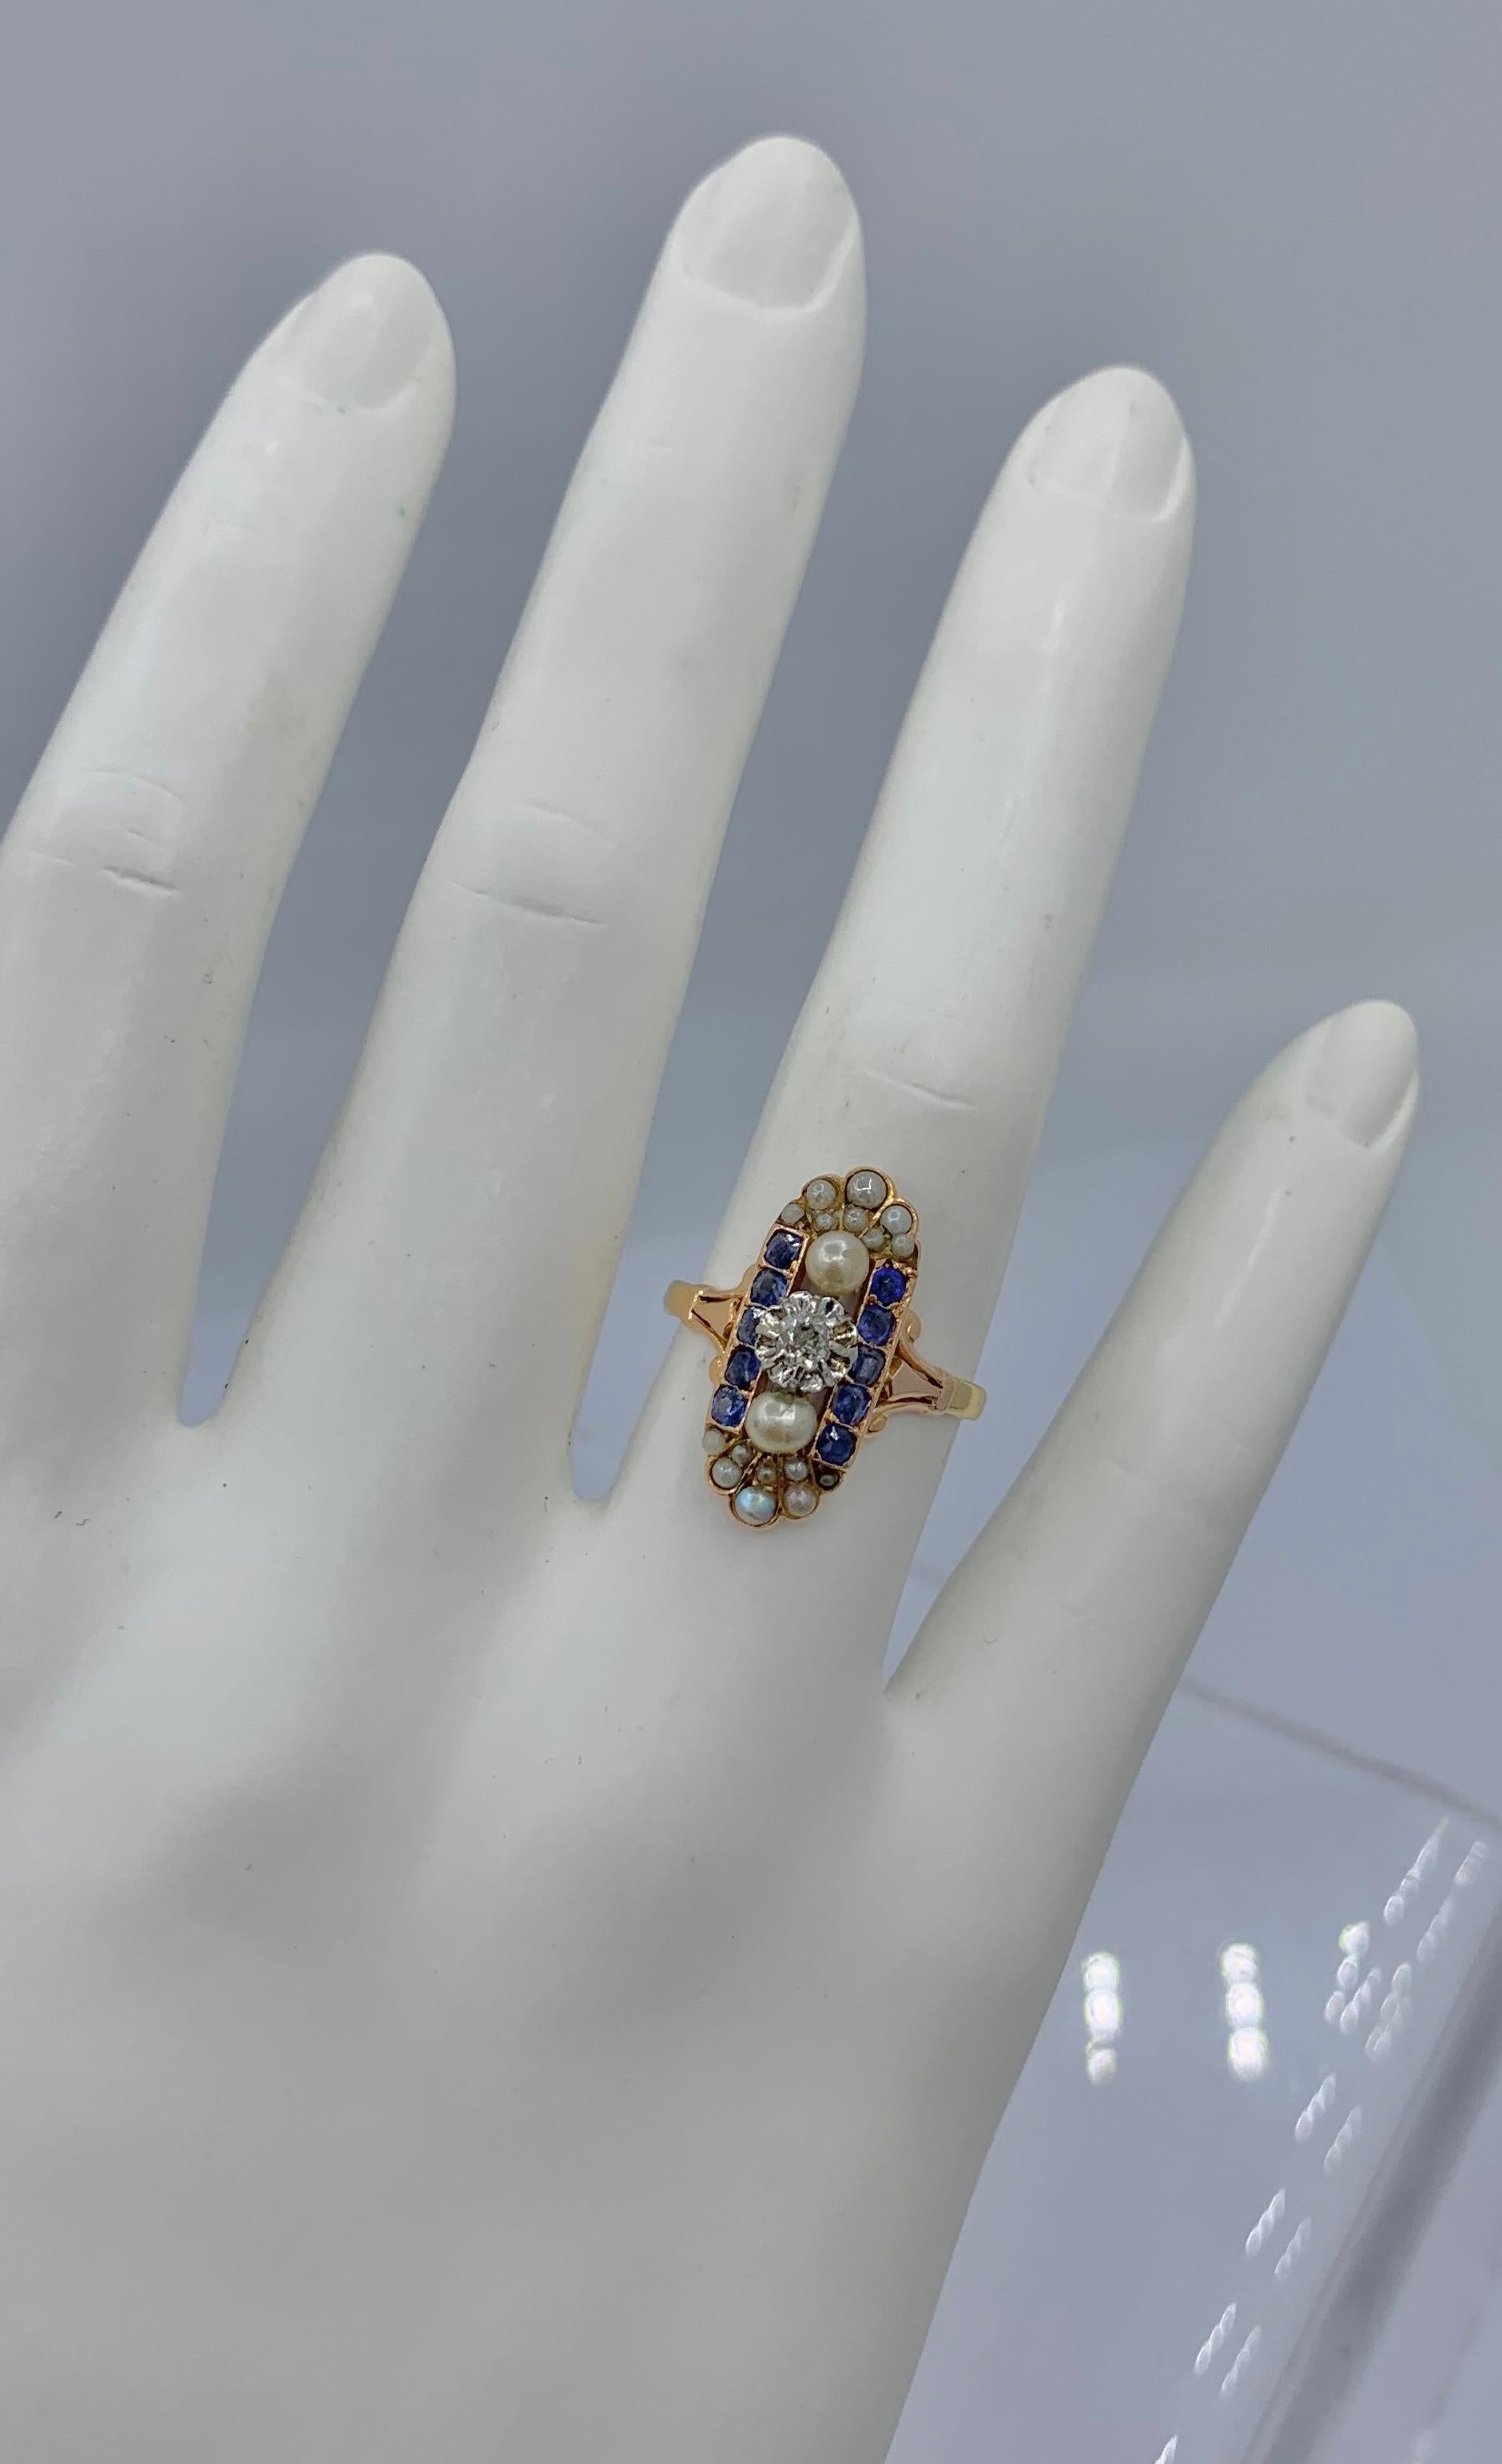 Dies ist eine absolut atemberaubende Old Mine Cut Diamant, natürlicher Saphir und Perle, Platin und Gold antiken Art Deco - viktorianischen Hochzeit Verlobungsring.  Das ovale Paneeldesign in Platin ist wunderschön.   In der Mitte des Rings befindet